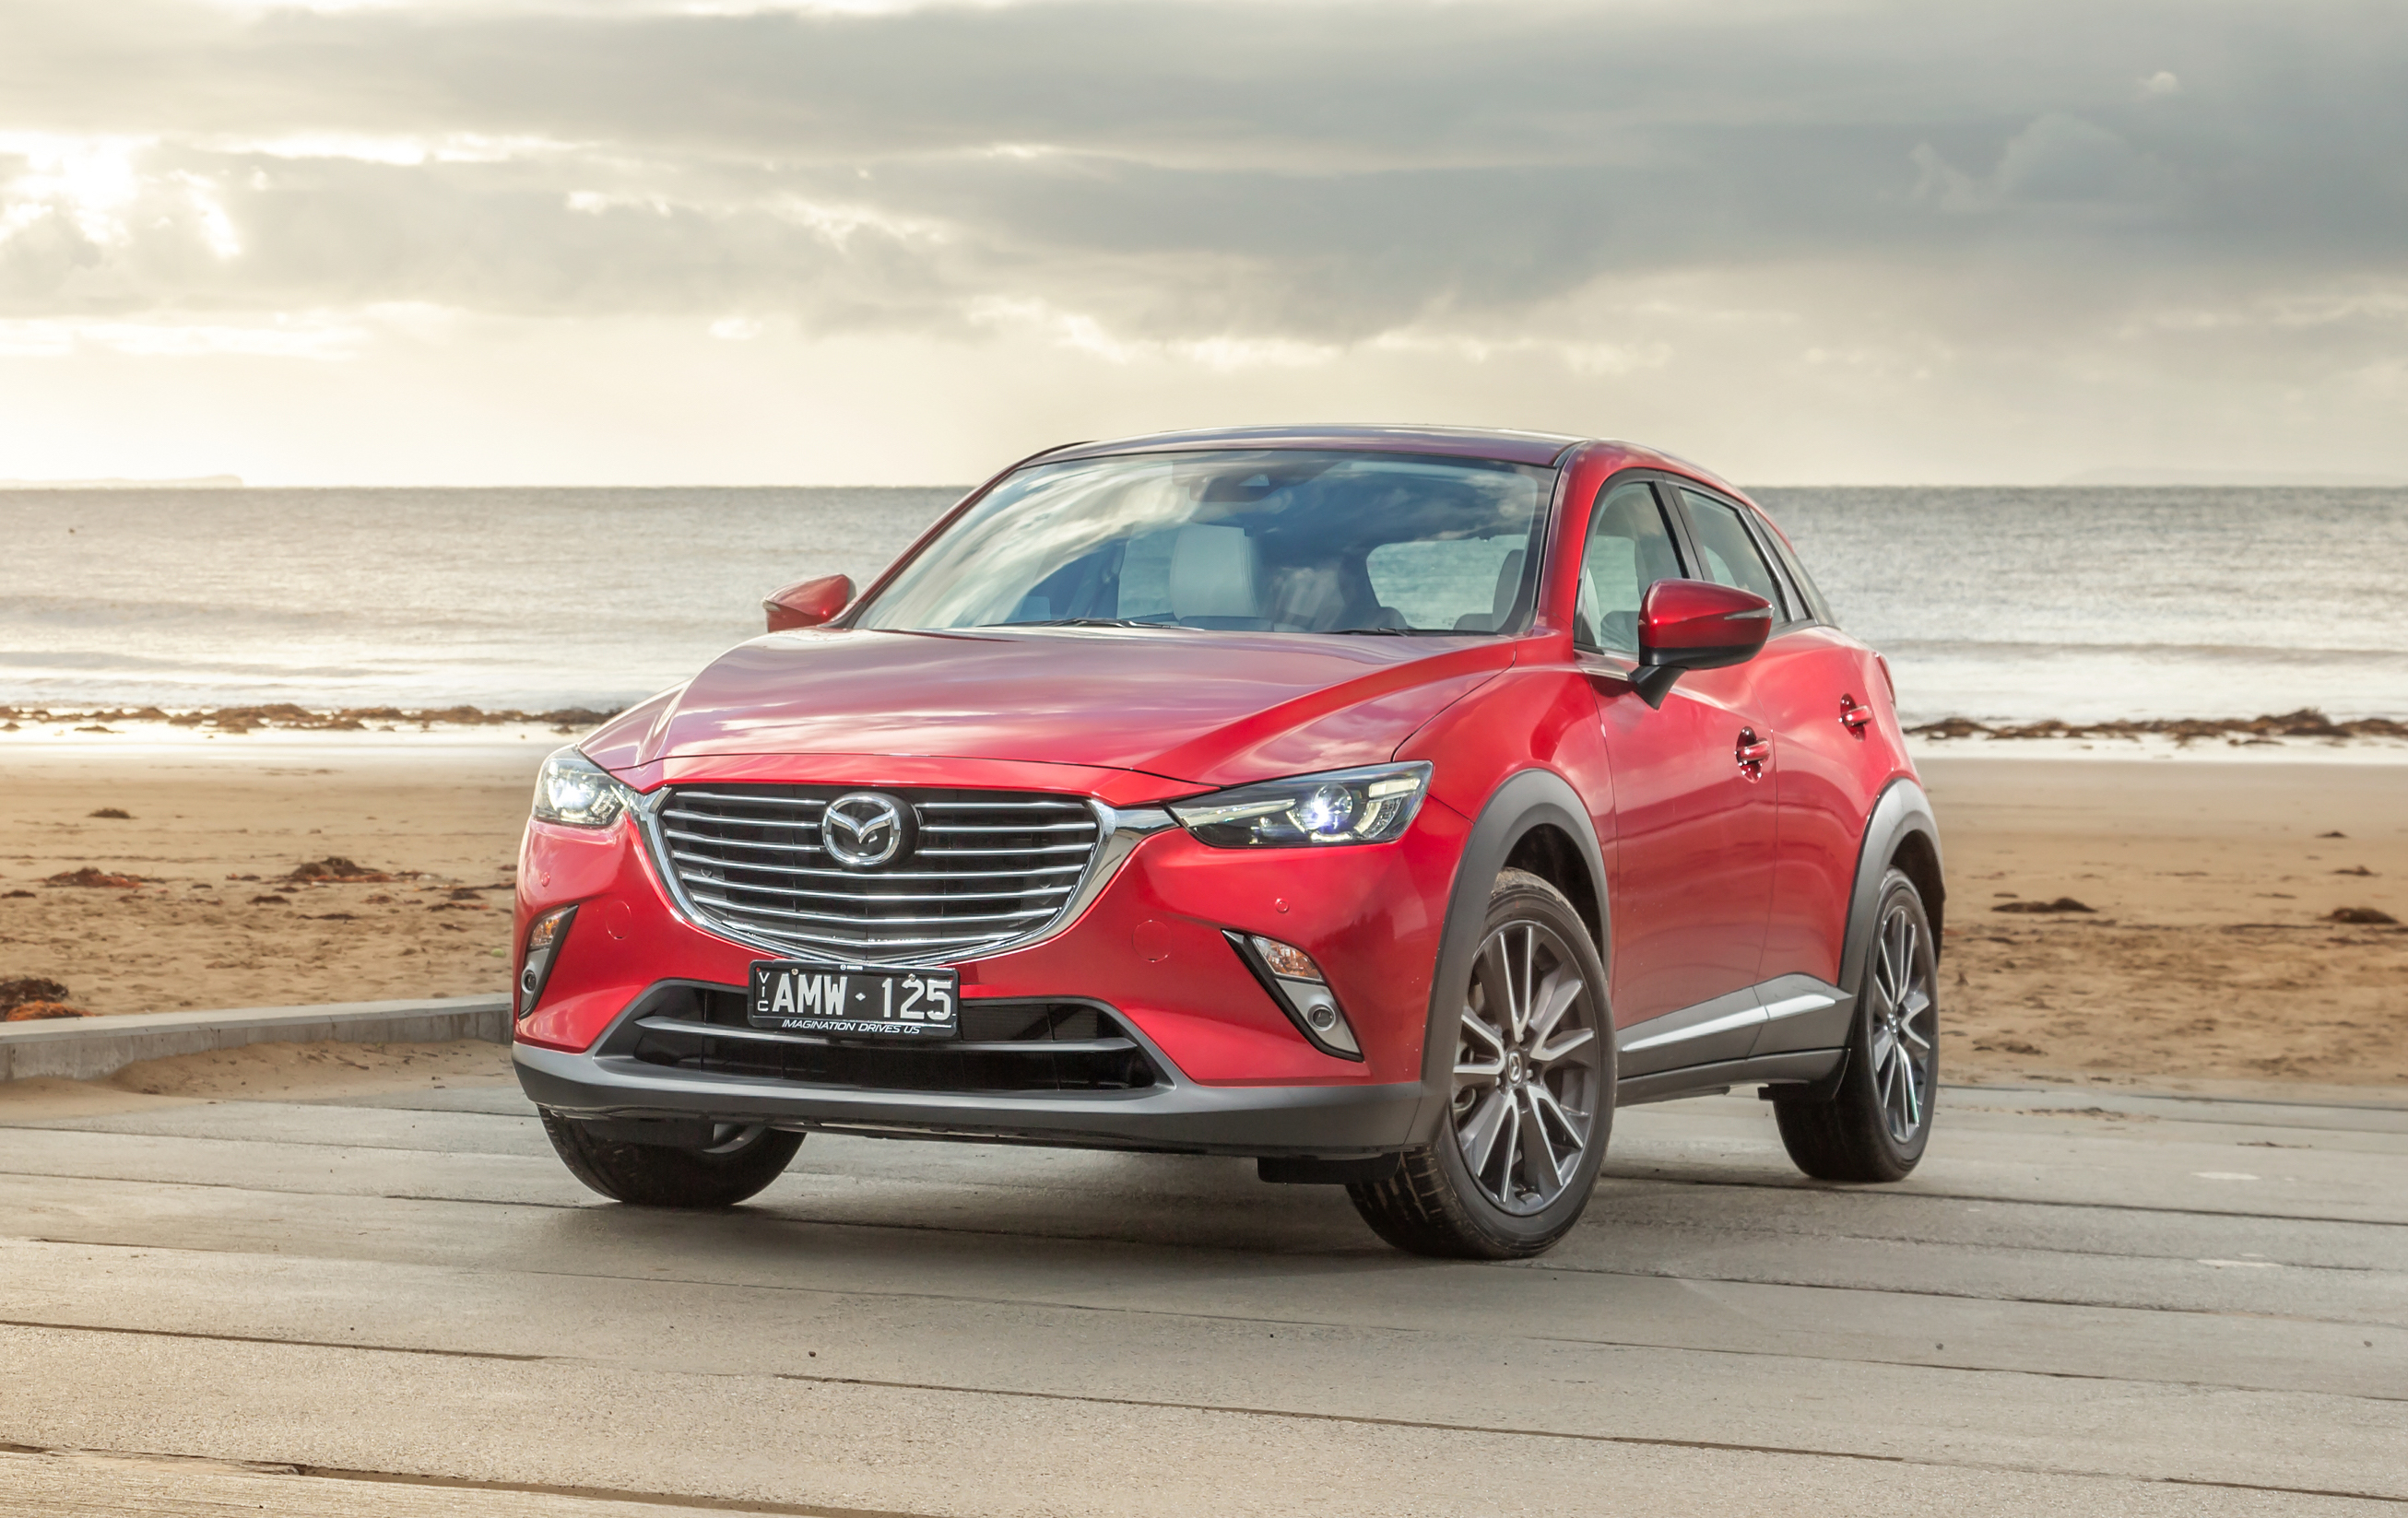 2017 Mazda CX3 review photos CarAdvice